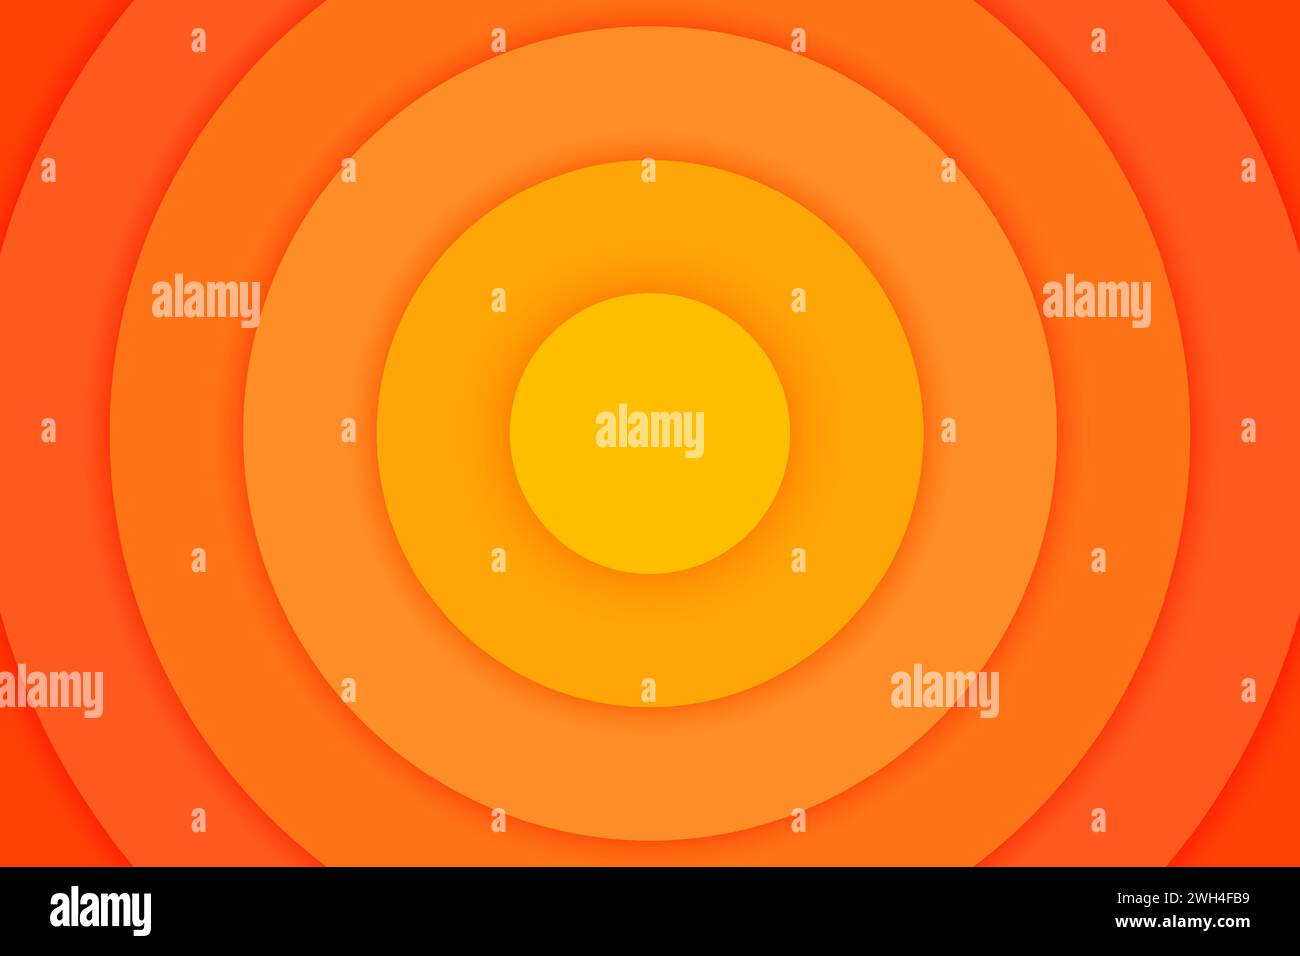 Banner cerchi concentrici arancioni. Sole, luce solare, alba, sfondo del sole. Increspature, impatto, epicentro, radar, target, sfondo sonar wave. Illustrazione vettoriale con effetto di taglio della carta. Illustrazione Vettoriale